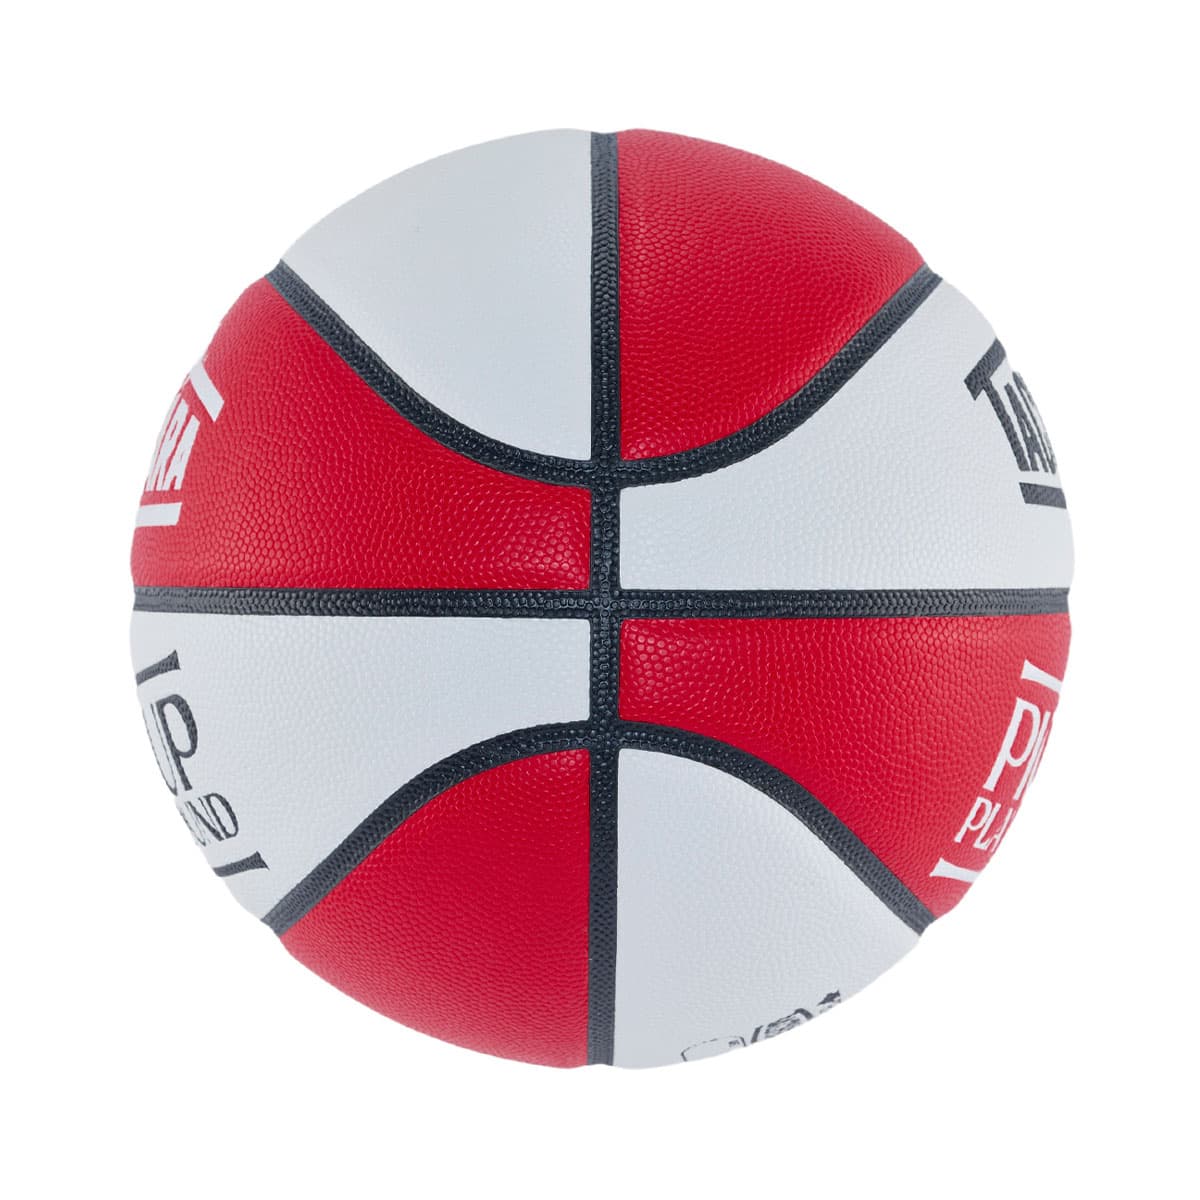 PICK UP PLAYGROUND × TACHIKARA BALL PACK RED / WHITE 23SP-I